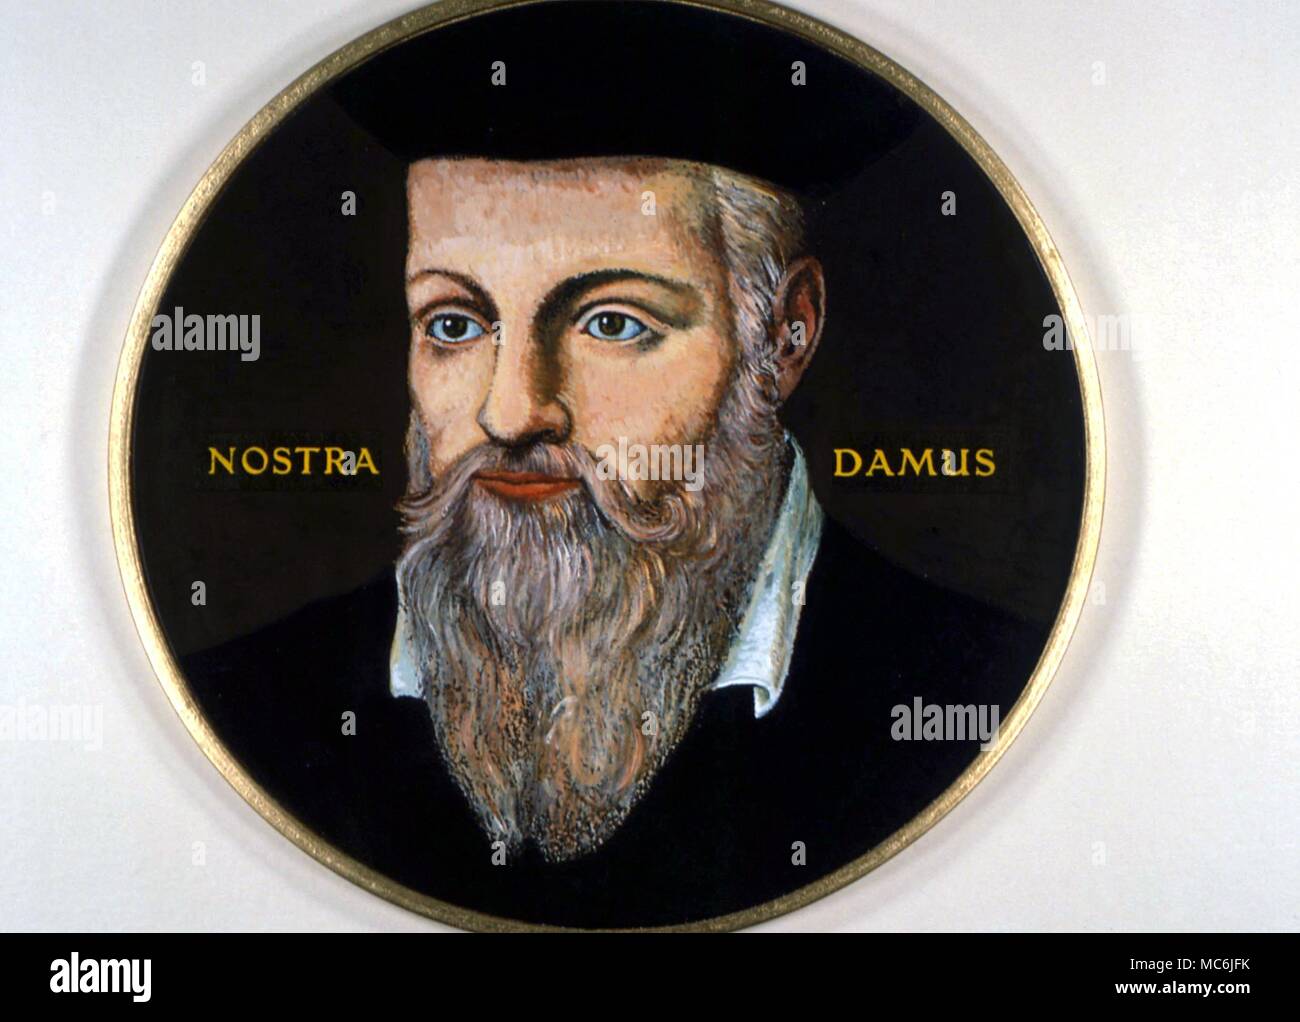 Occultistes - NOSTRADAMUS. Portrait miniature du grand devin et astrologue, Michael Nostradamus (1503-'566) Auteur de la célèbre "Siècles" de versets prophétiques Banque D'Images